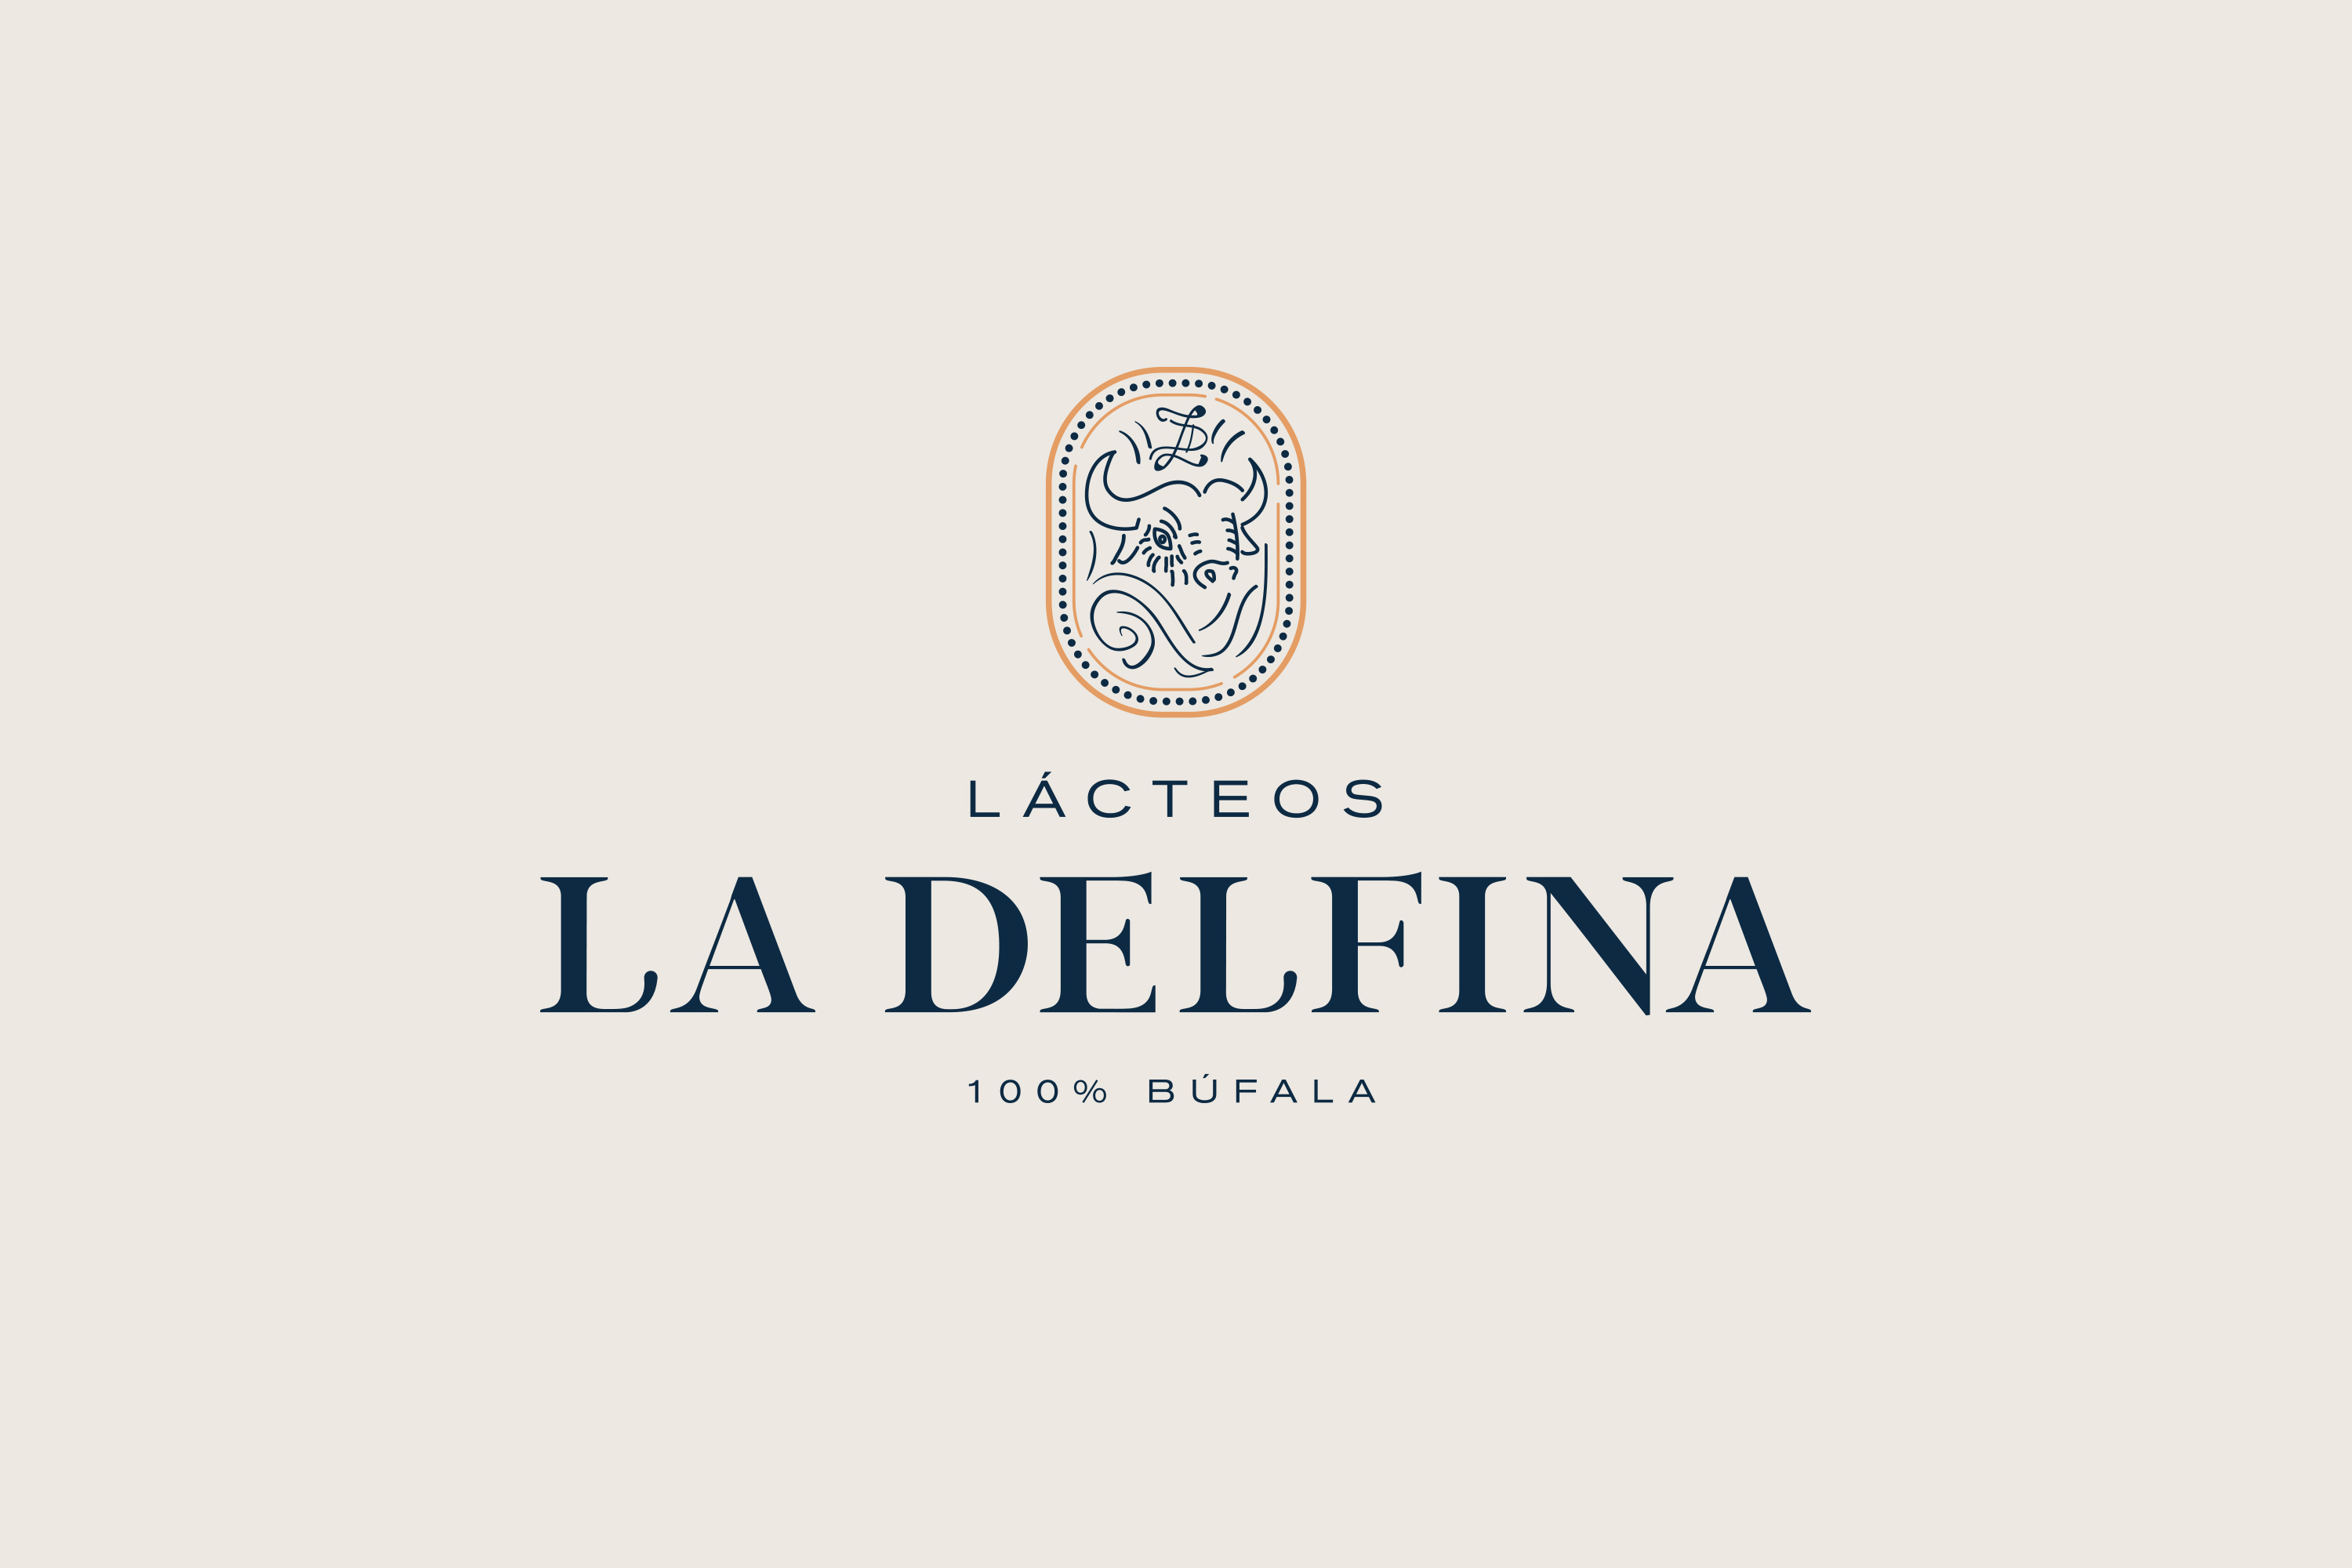 lacteos-la-delfina-vanya-silva-bunker3022-03